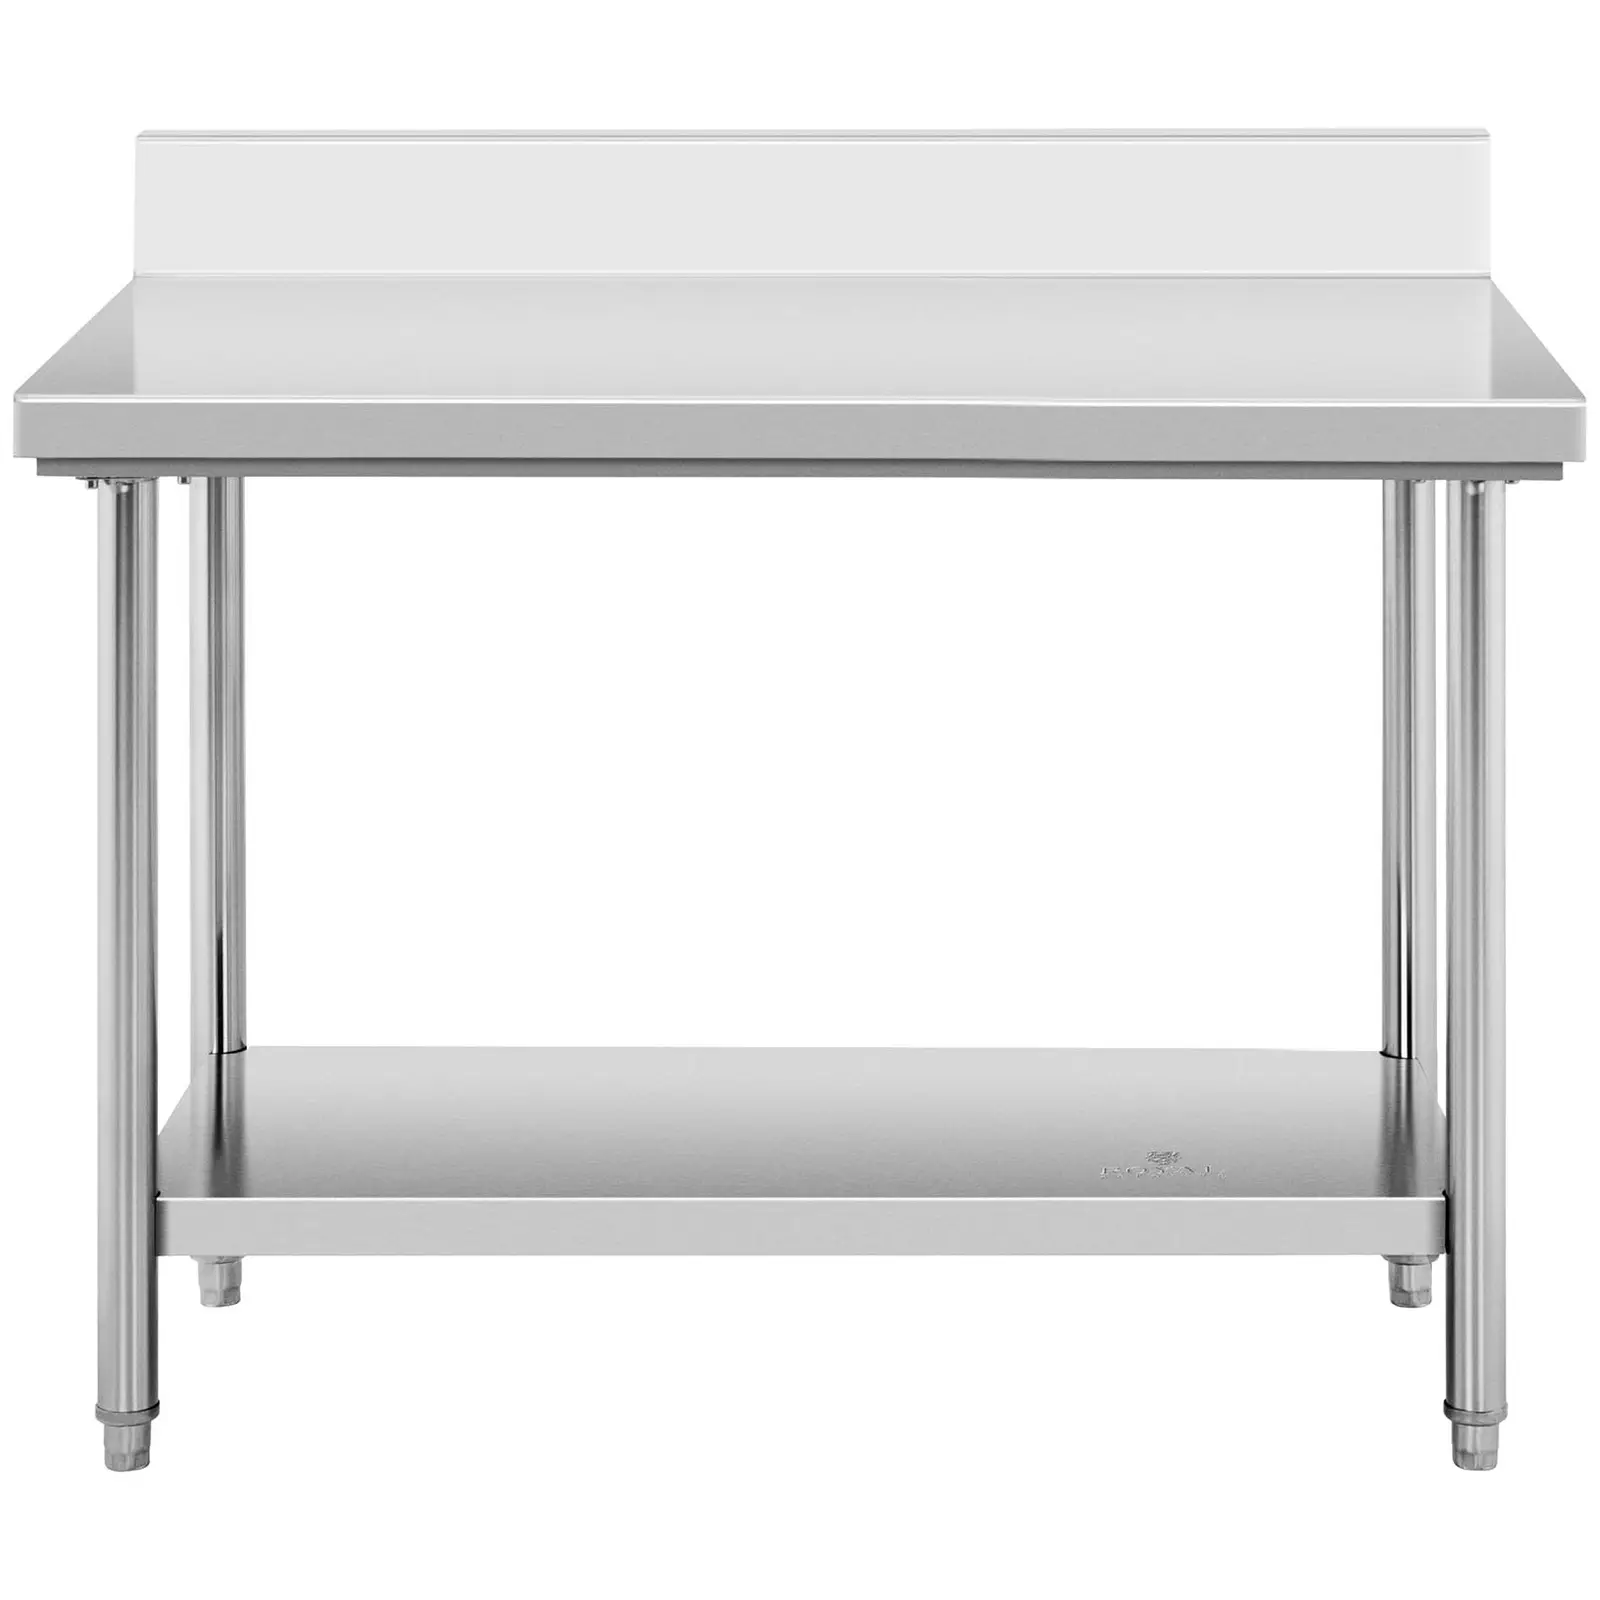 Rozsdamentes acél asztal - 120 x 70 cm - karima - 143 kg-os teherbírás